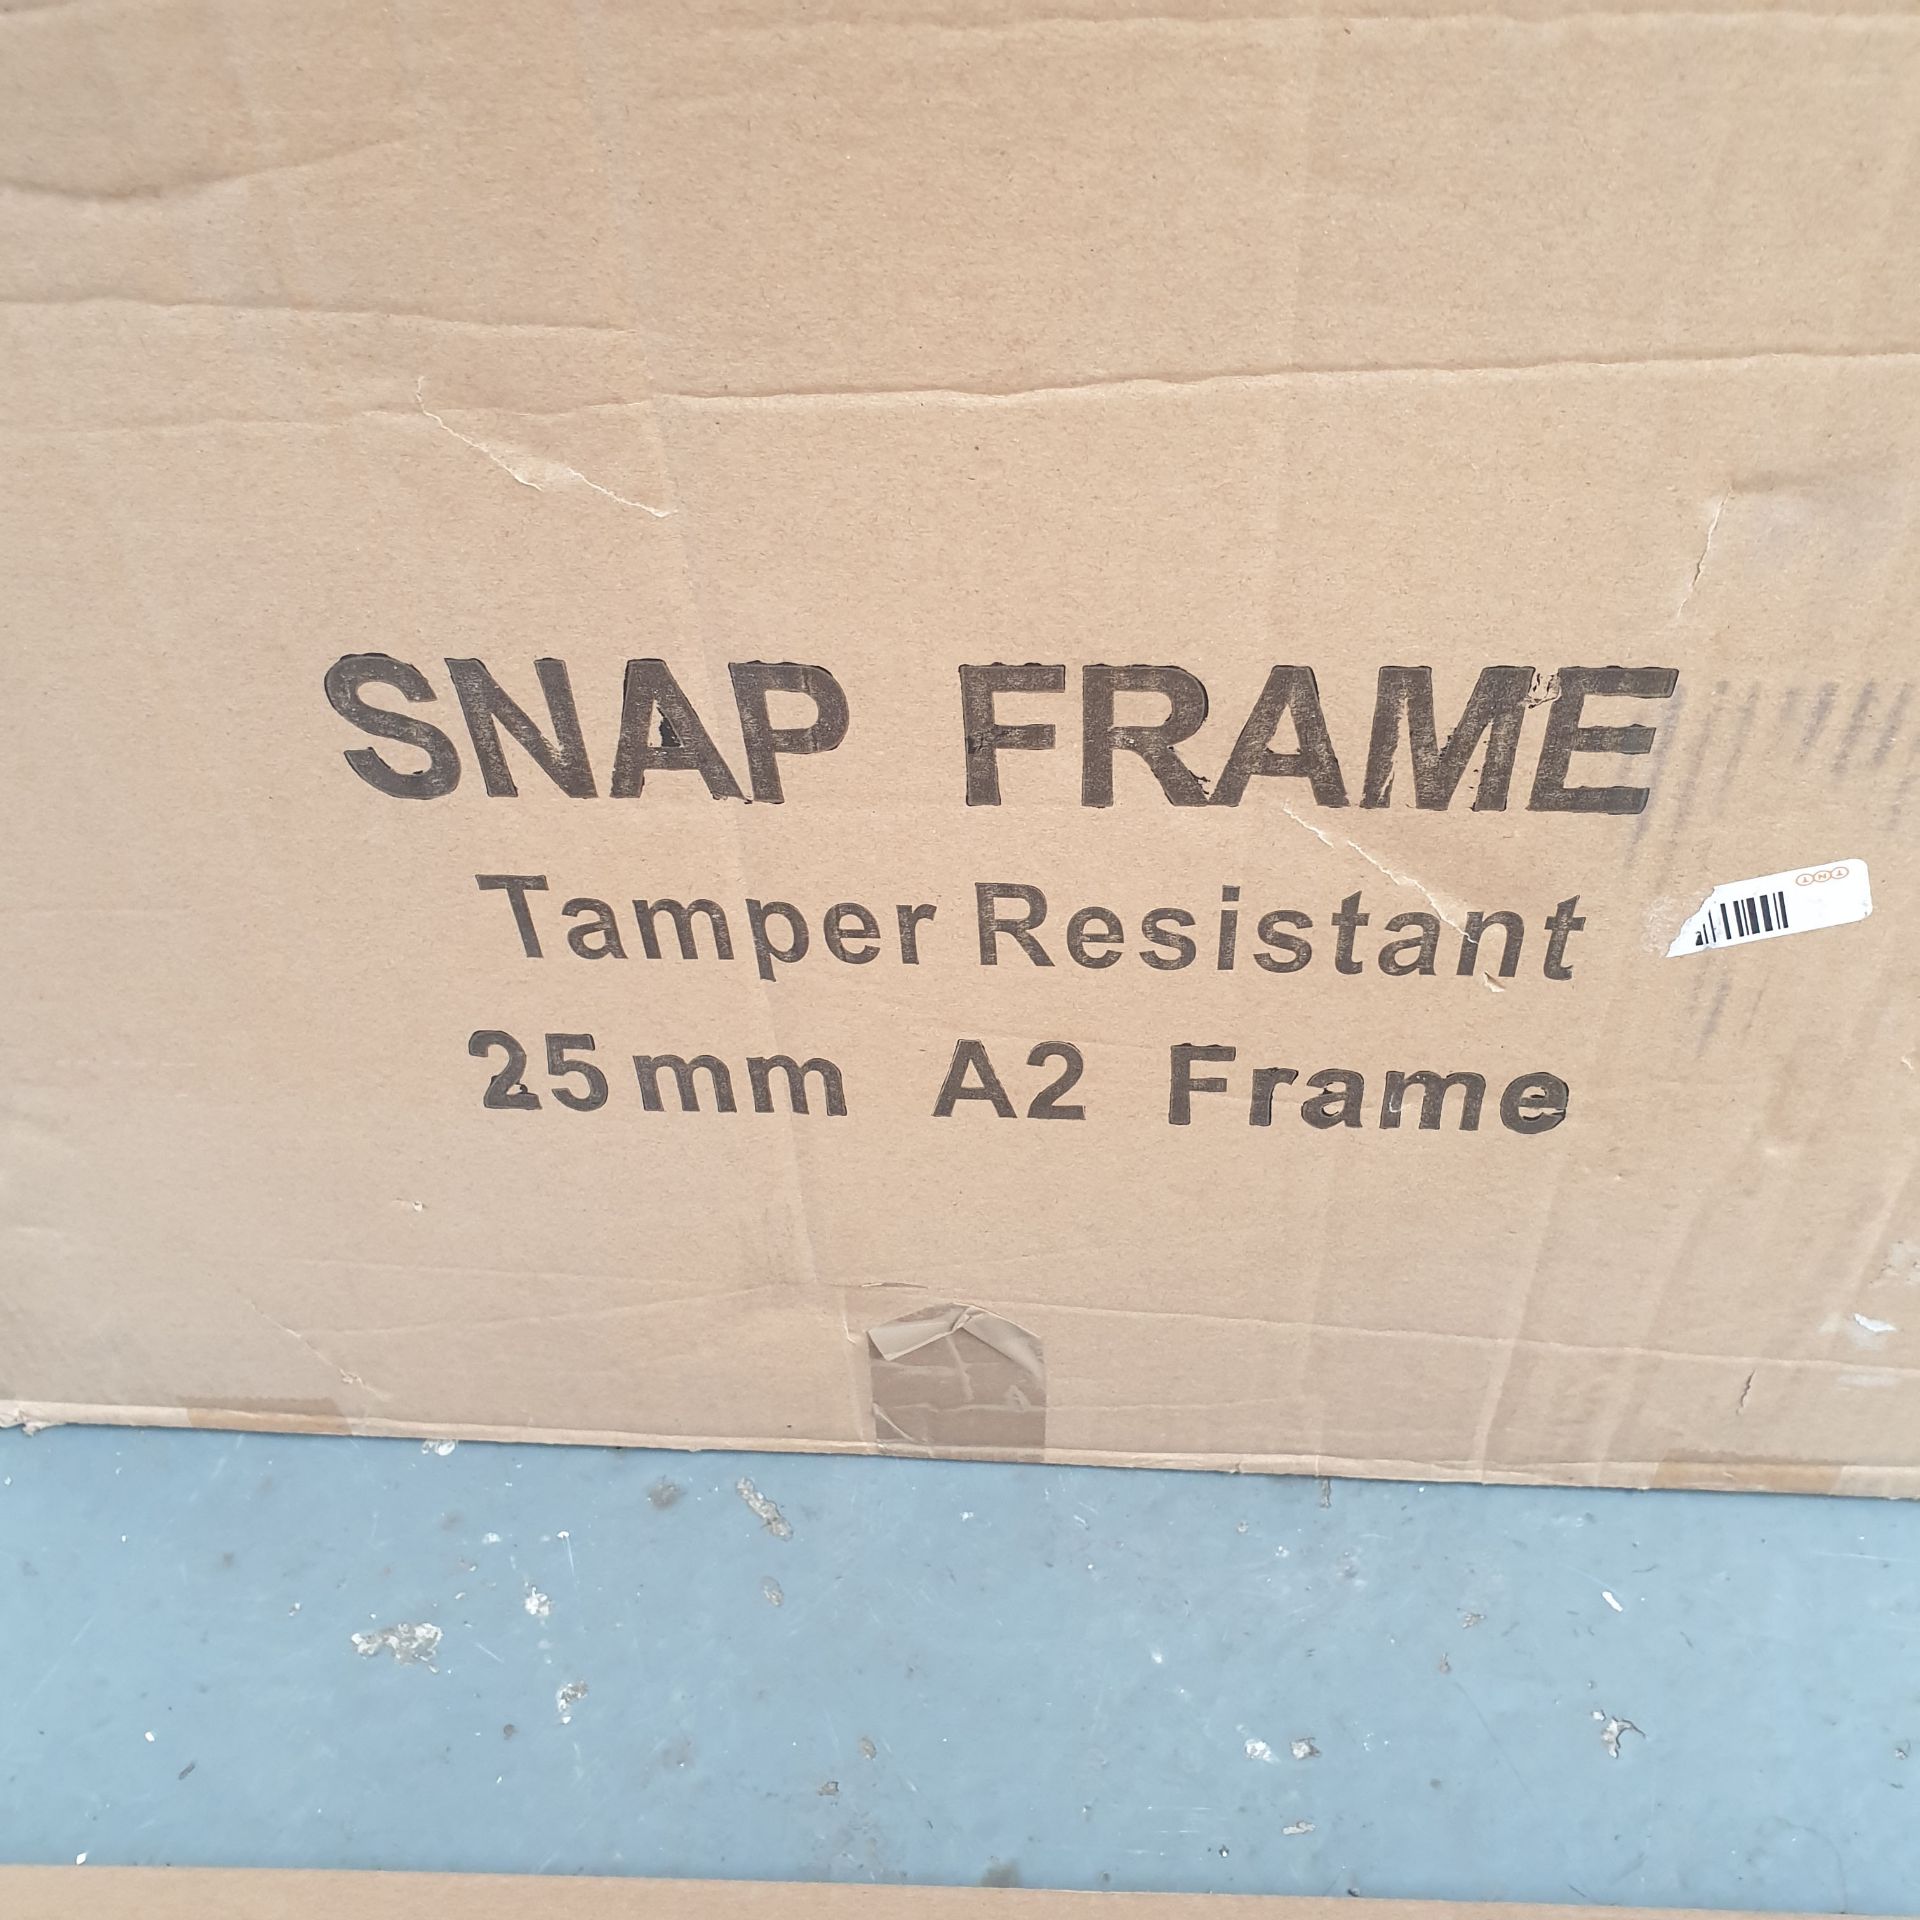 10 x Snap Frame Tamper Resistant 25mm A2 Frame - Image 5 of 5